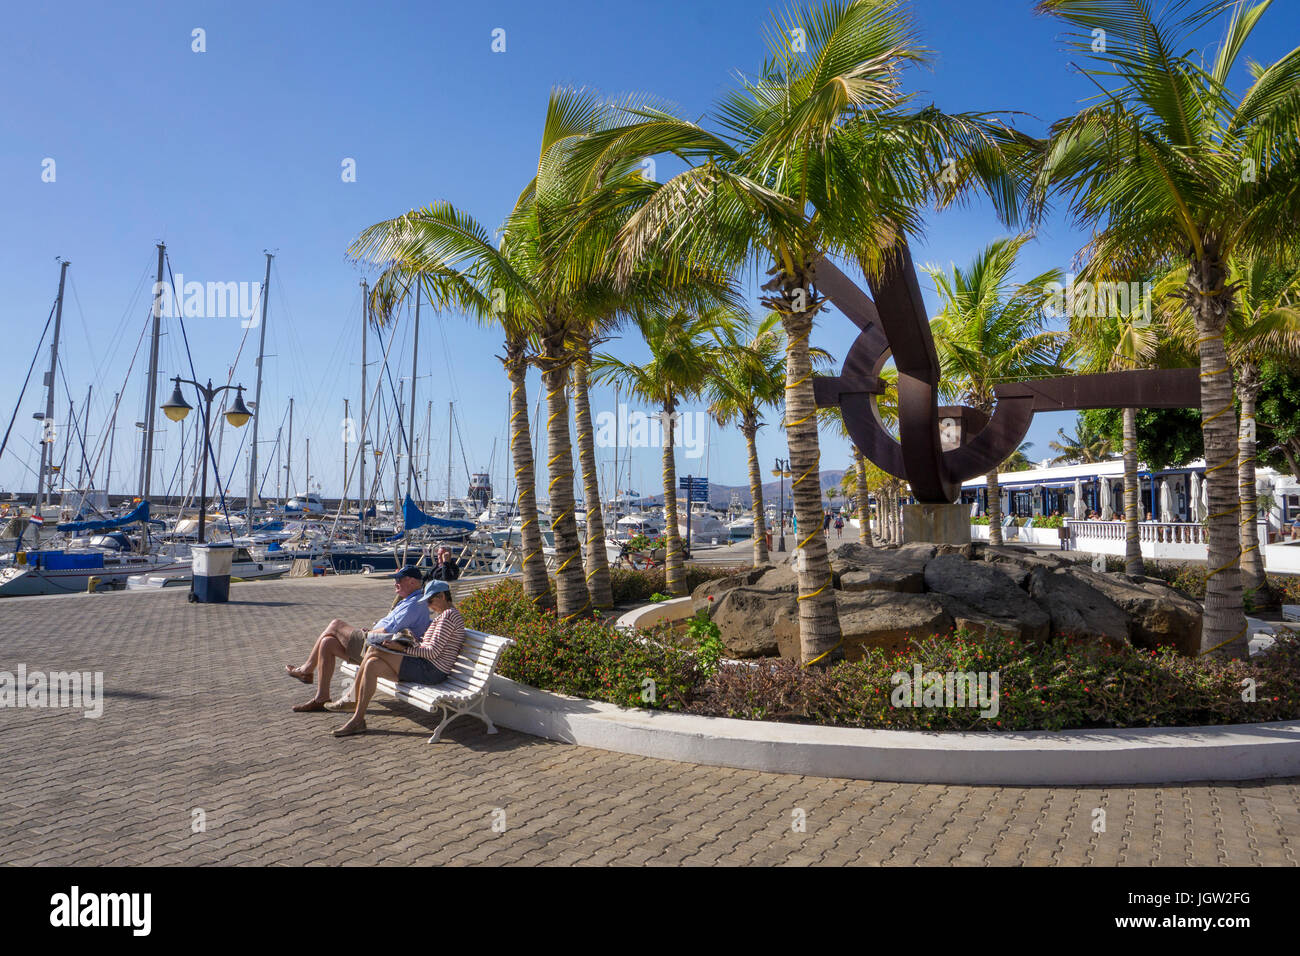 Les gens de promenade du port, port de plaisance, Puerto Calero, Lanzarote, îles Canaries, Espagne, Europe Banque D'Images